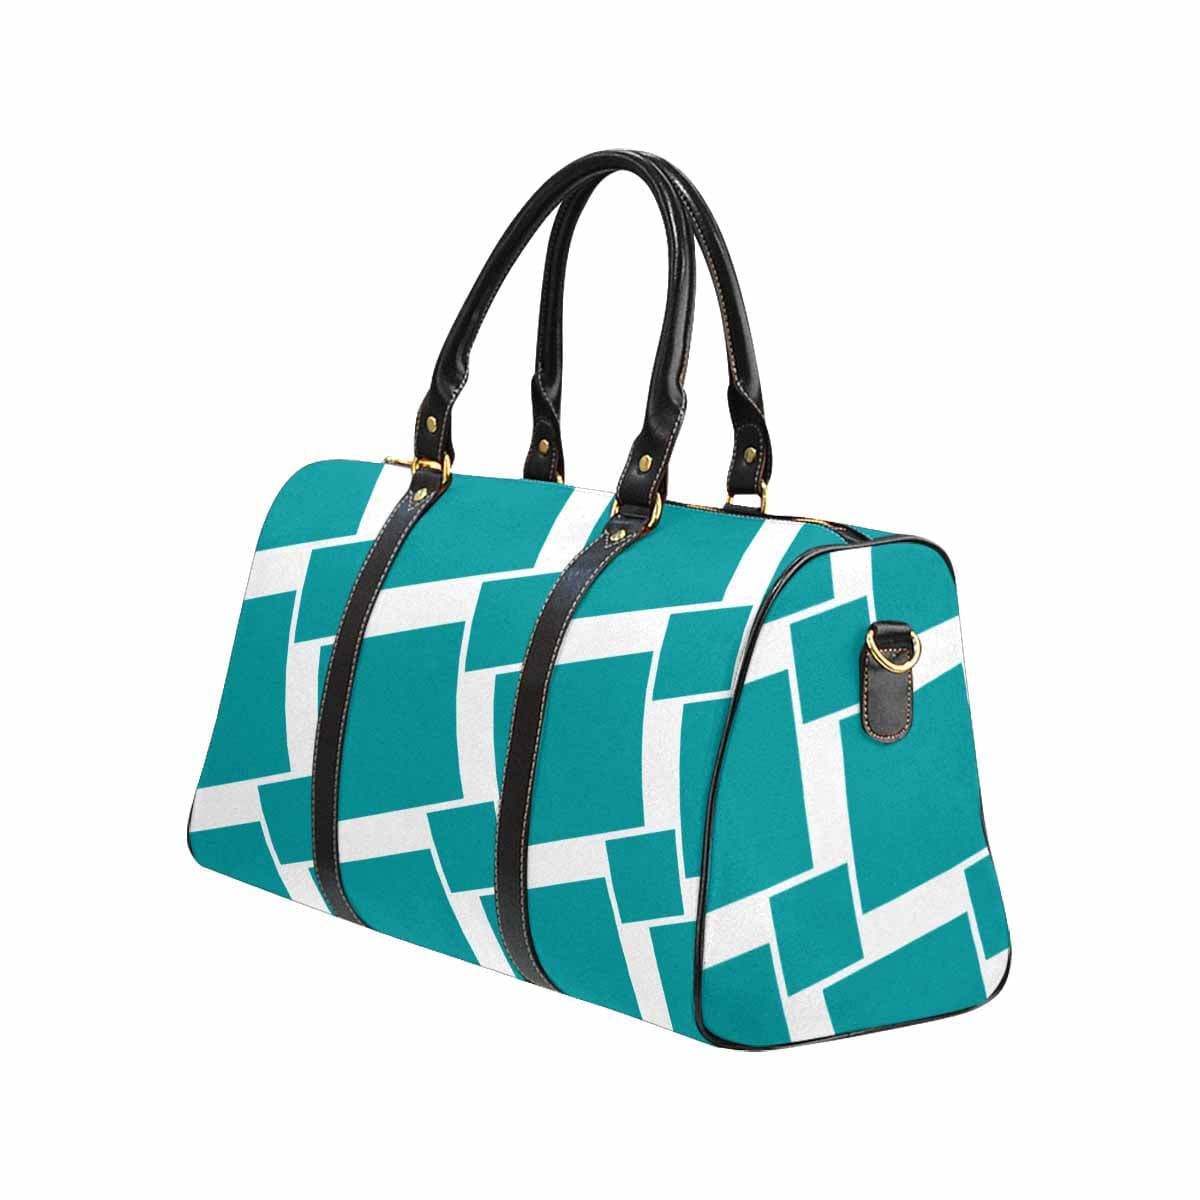 Travel Bag Adjustable Shoulder Strap Carry On Bag Mystic Blue - Bags | Travel